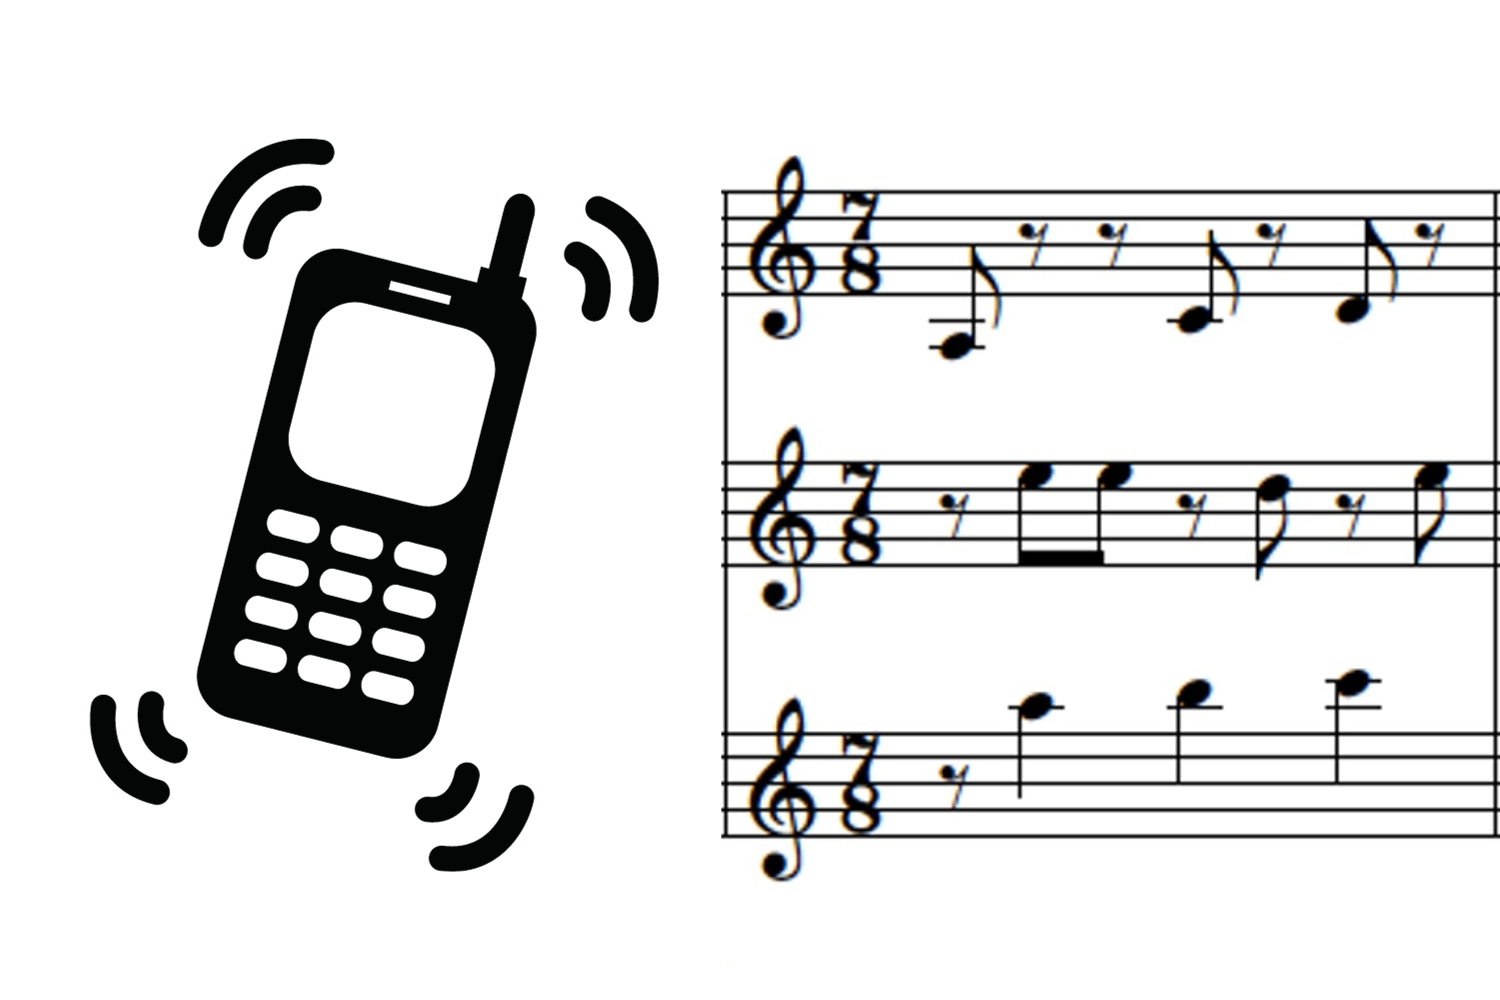 Symbolbild Klingelton: Grafik eines Handys und erster Takt der Noten in schwarz weiß